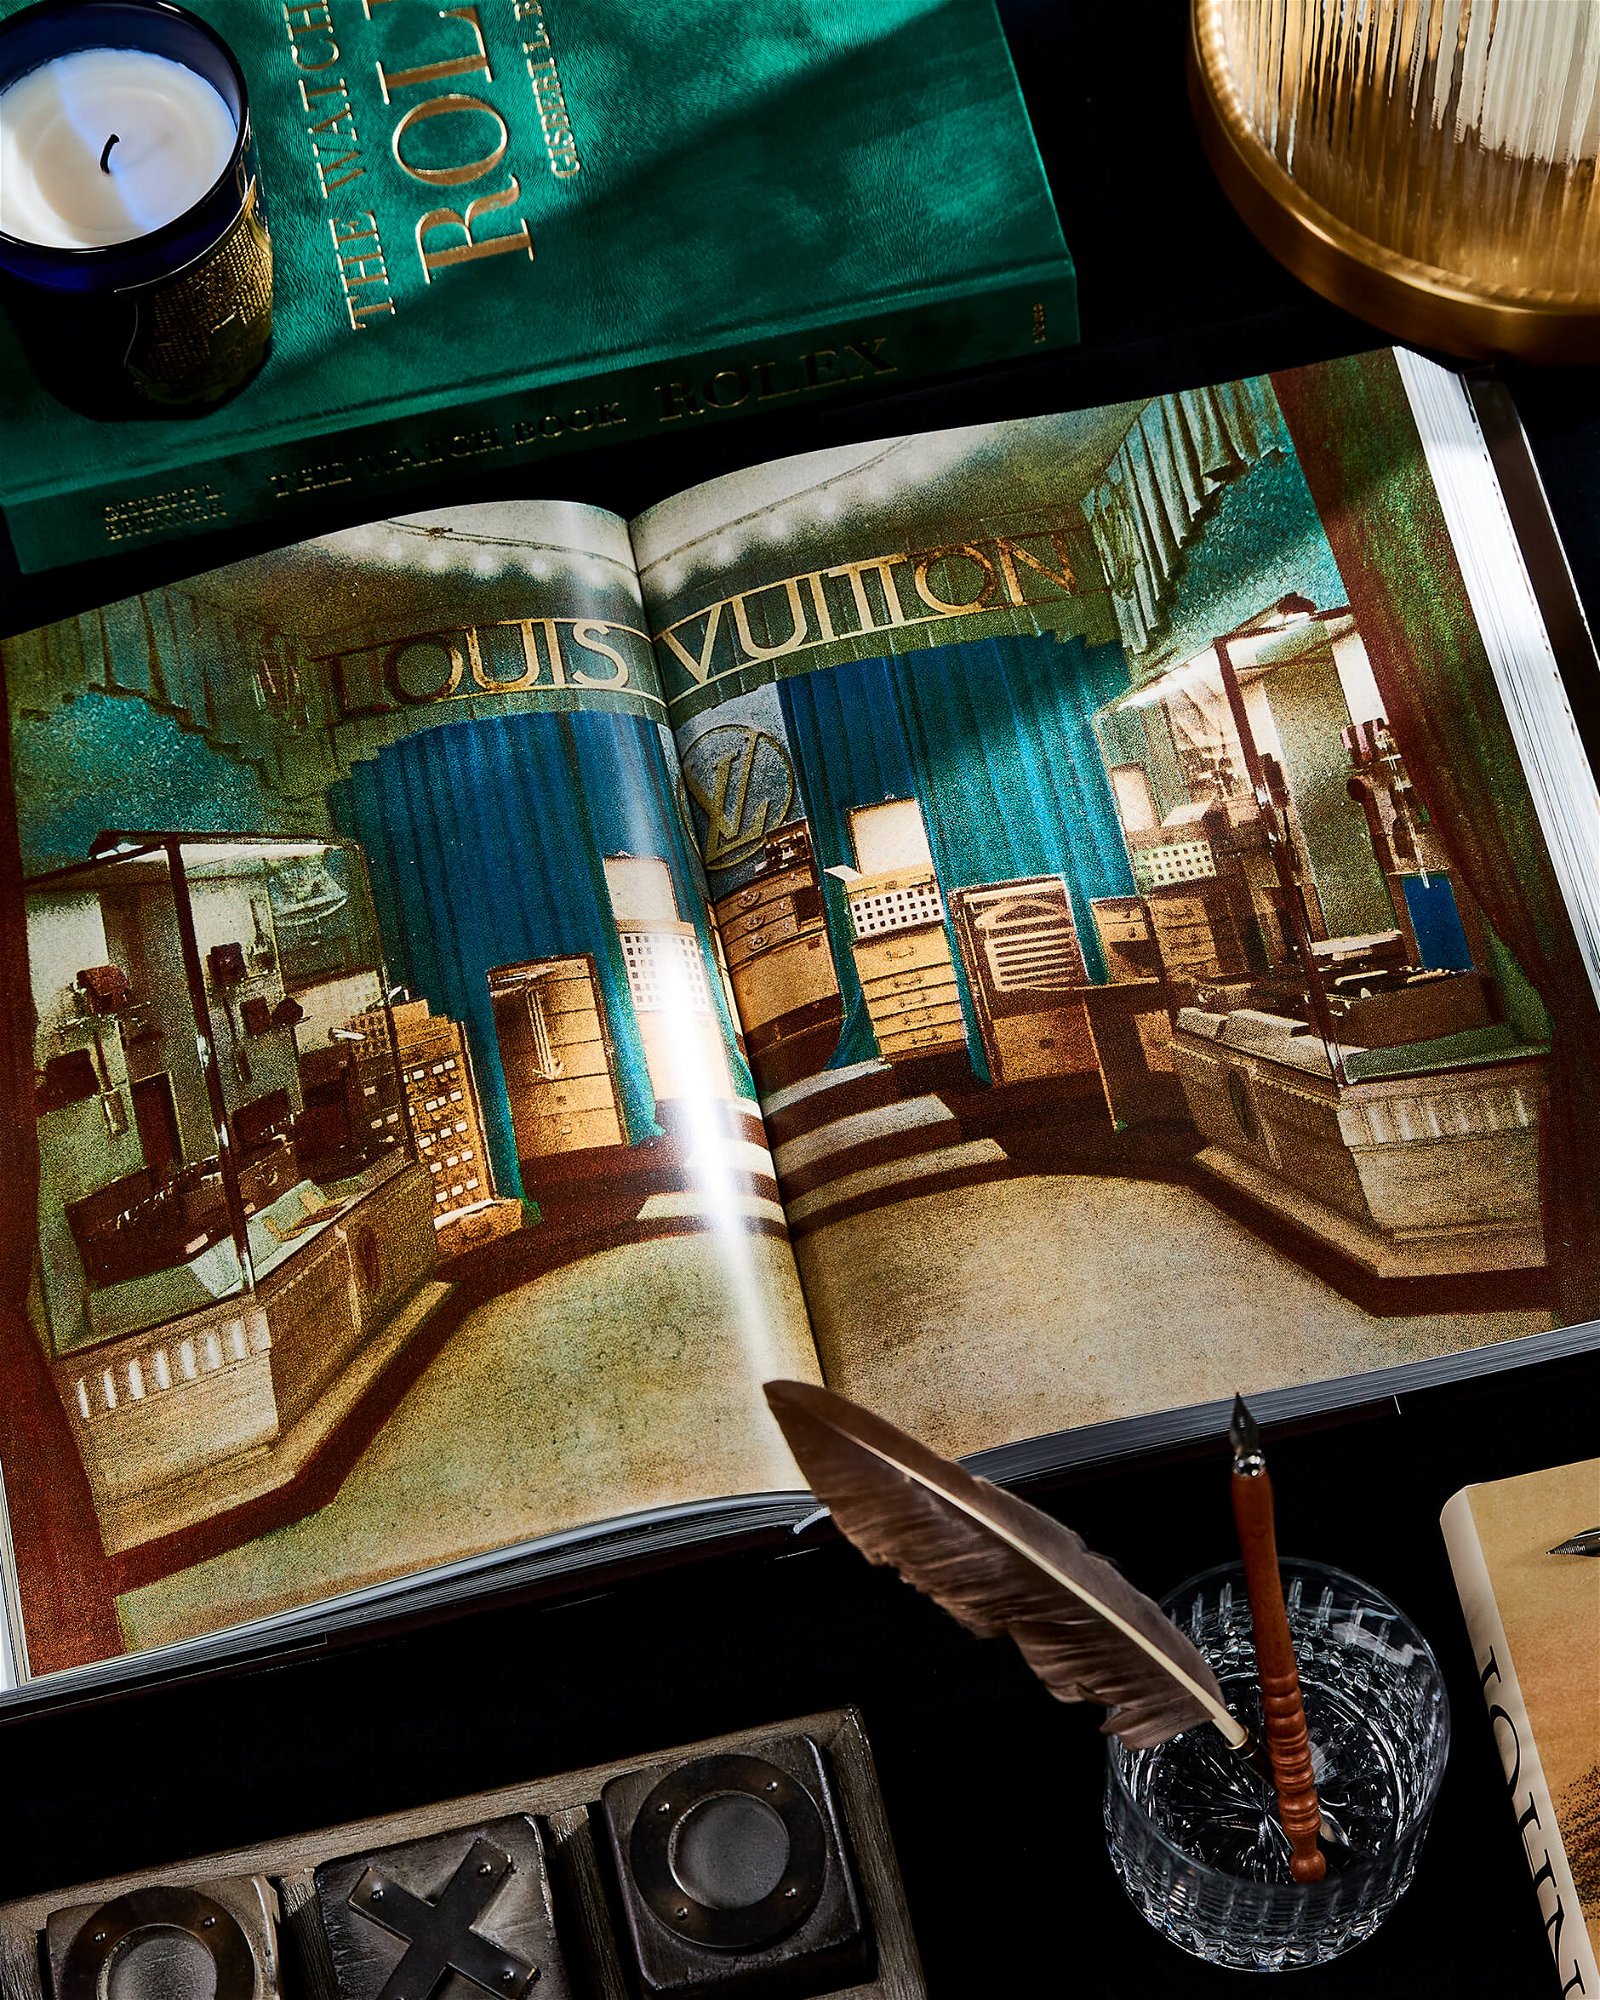 AROWONEN - Louis Vuitton book - The Birth of Modern Luxury